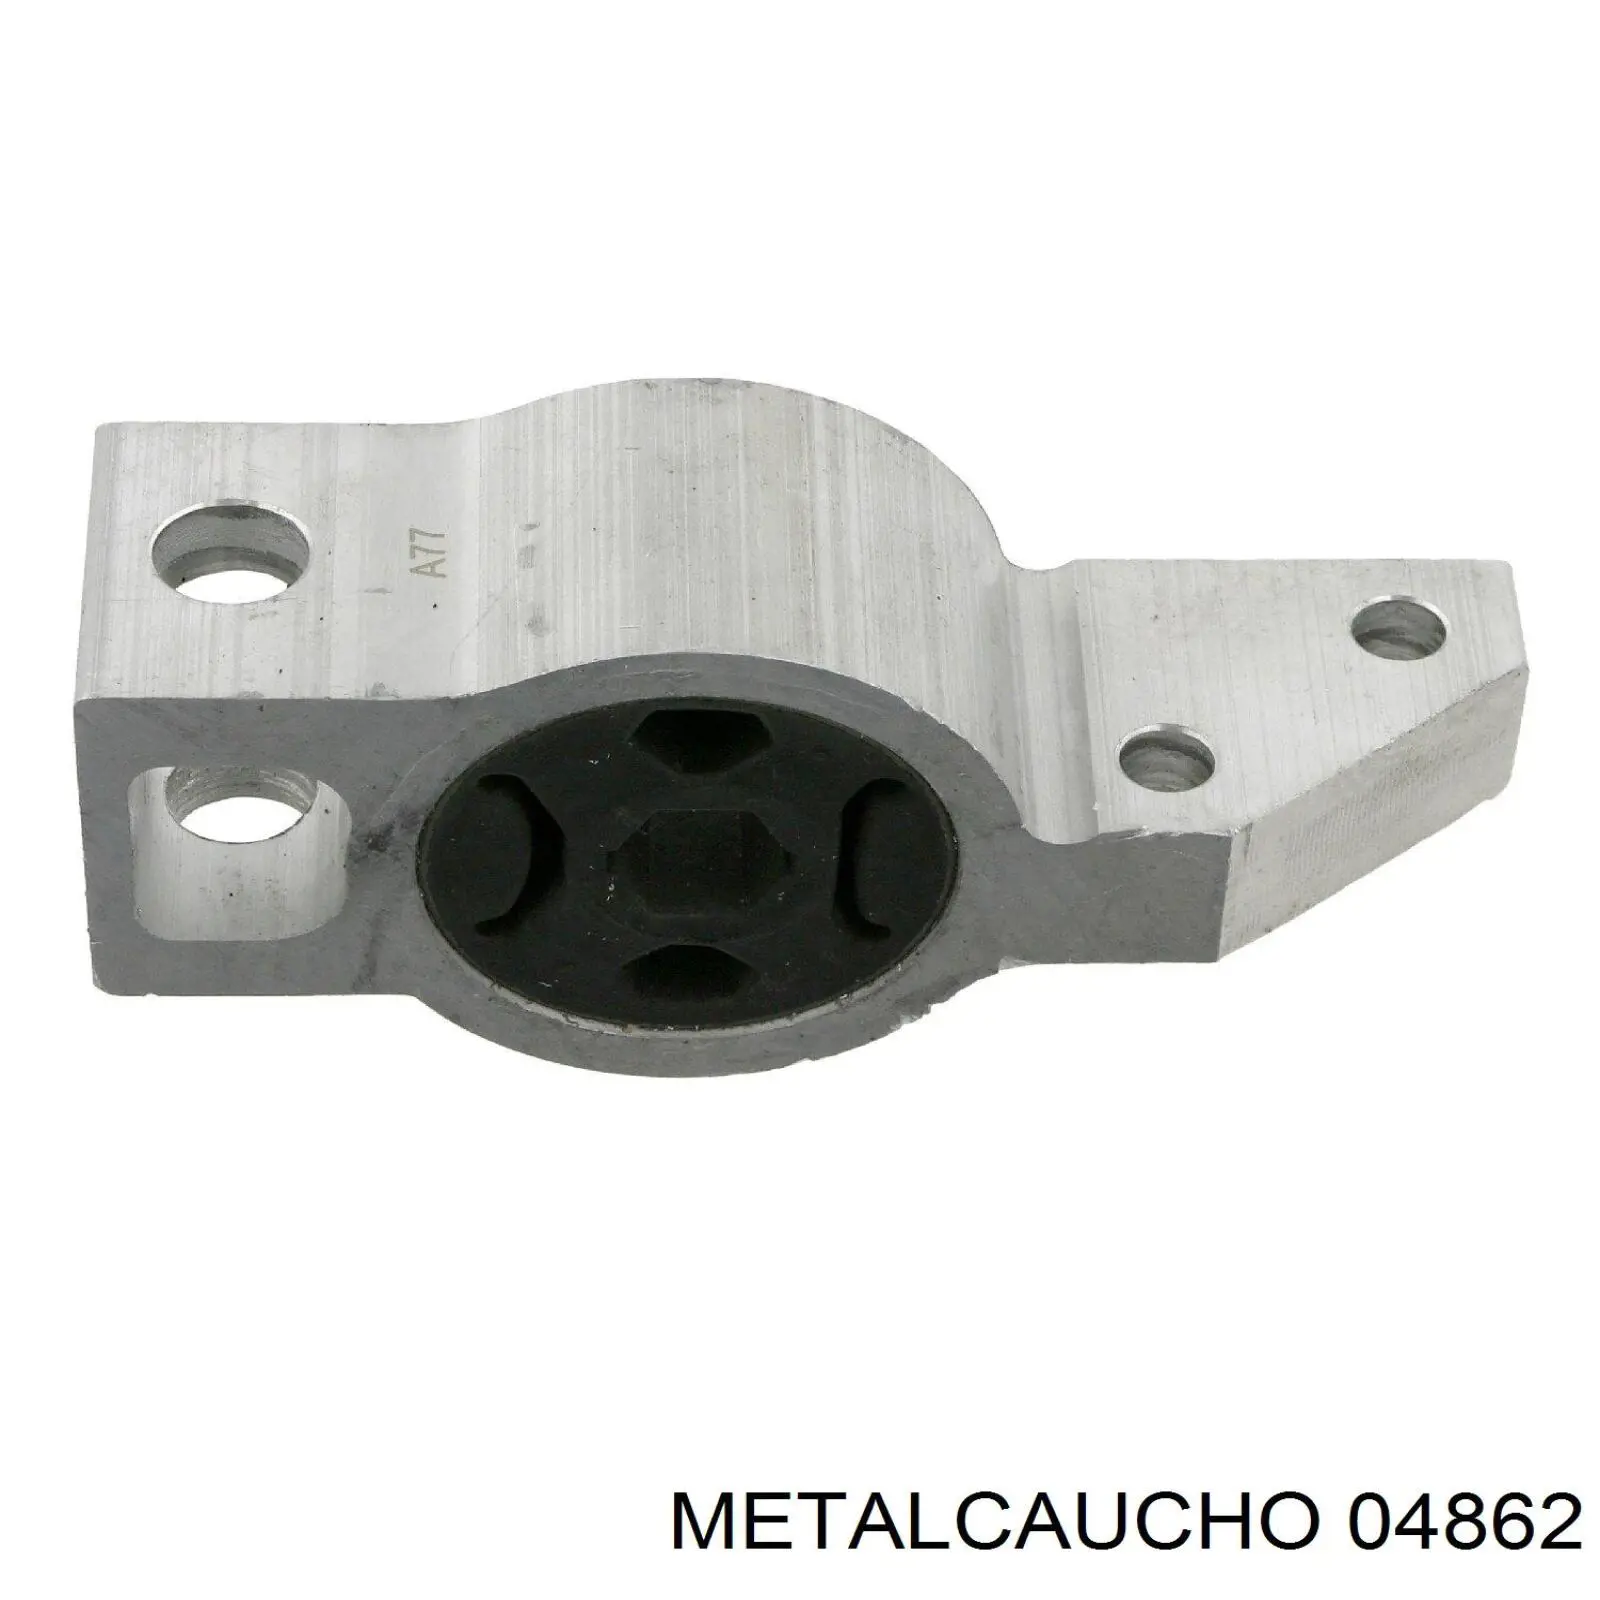 04862 Metalcaucho silentblock de suspensión delantero inferior